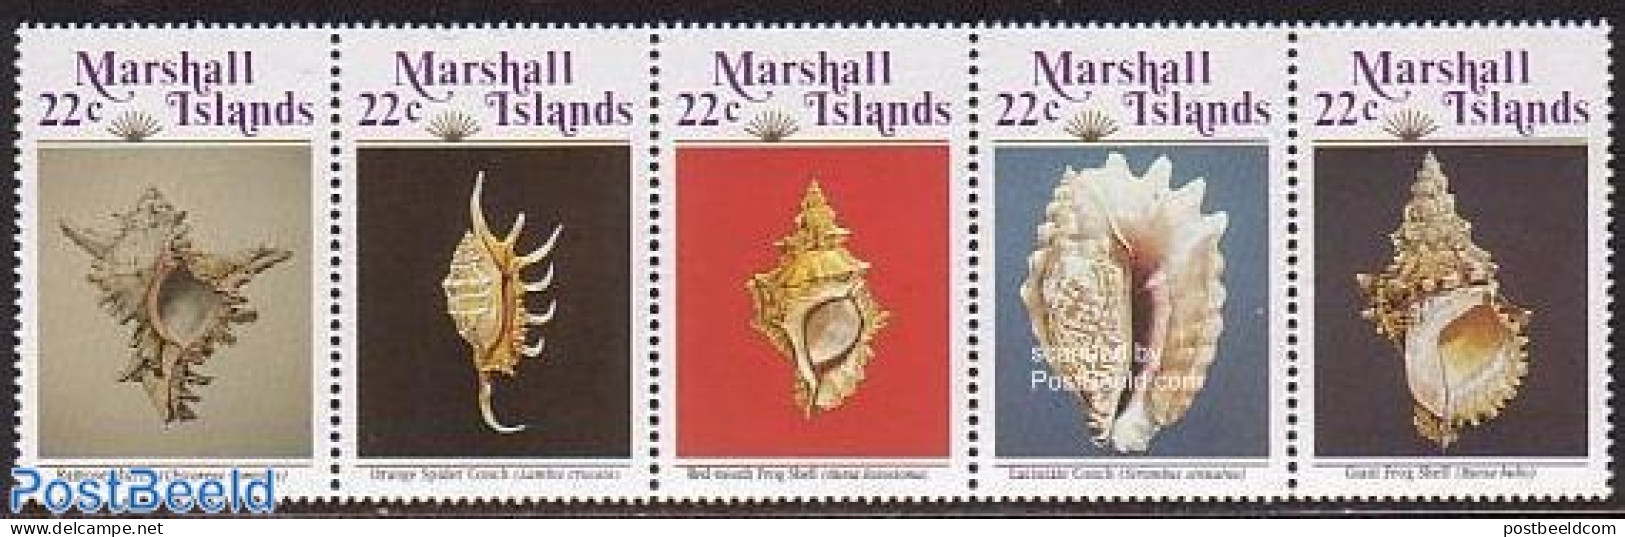 Marshall Islands 1986 Shells 5v [::::], Mint NH, Nature - Shells & Crustaceans - Mundo Aquatico